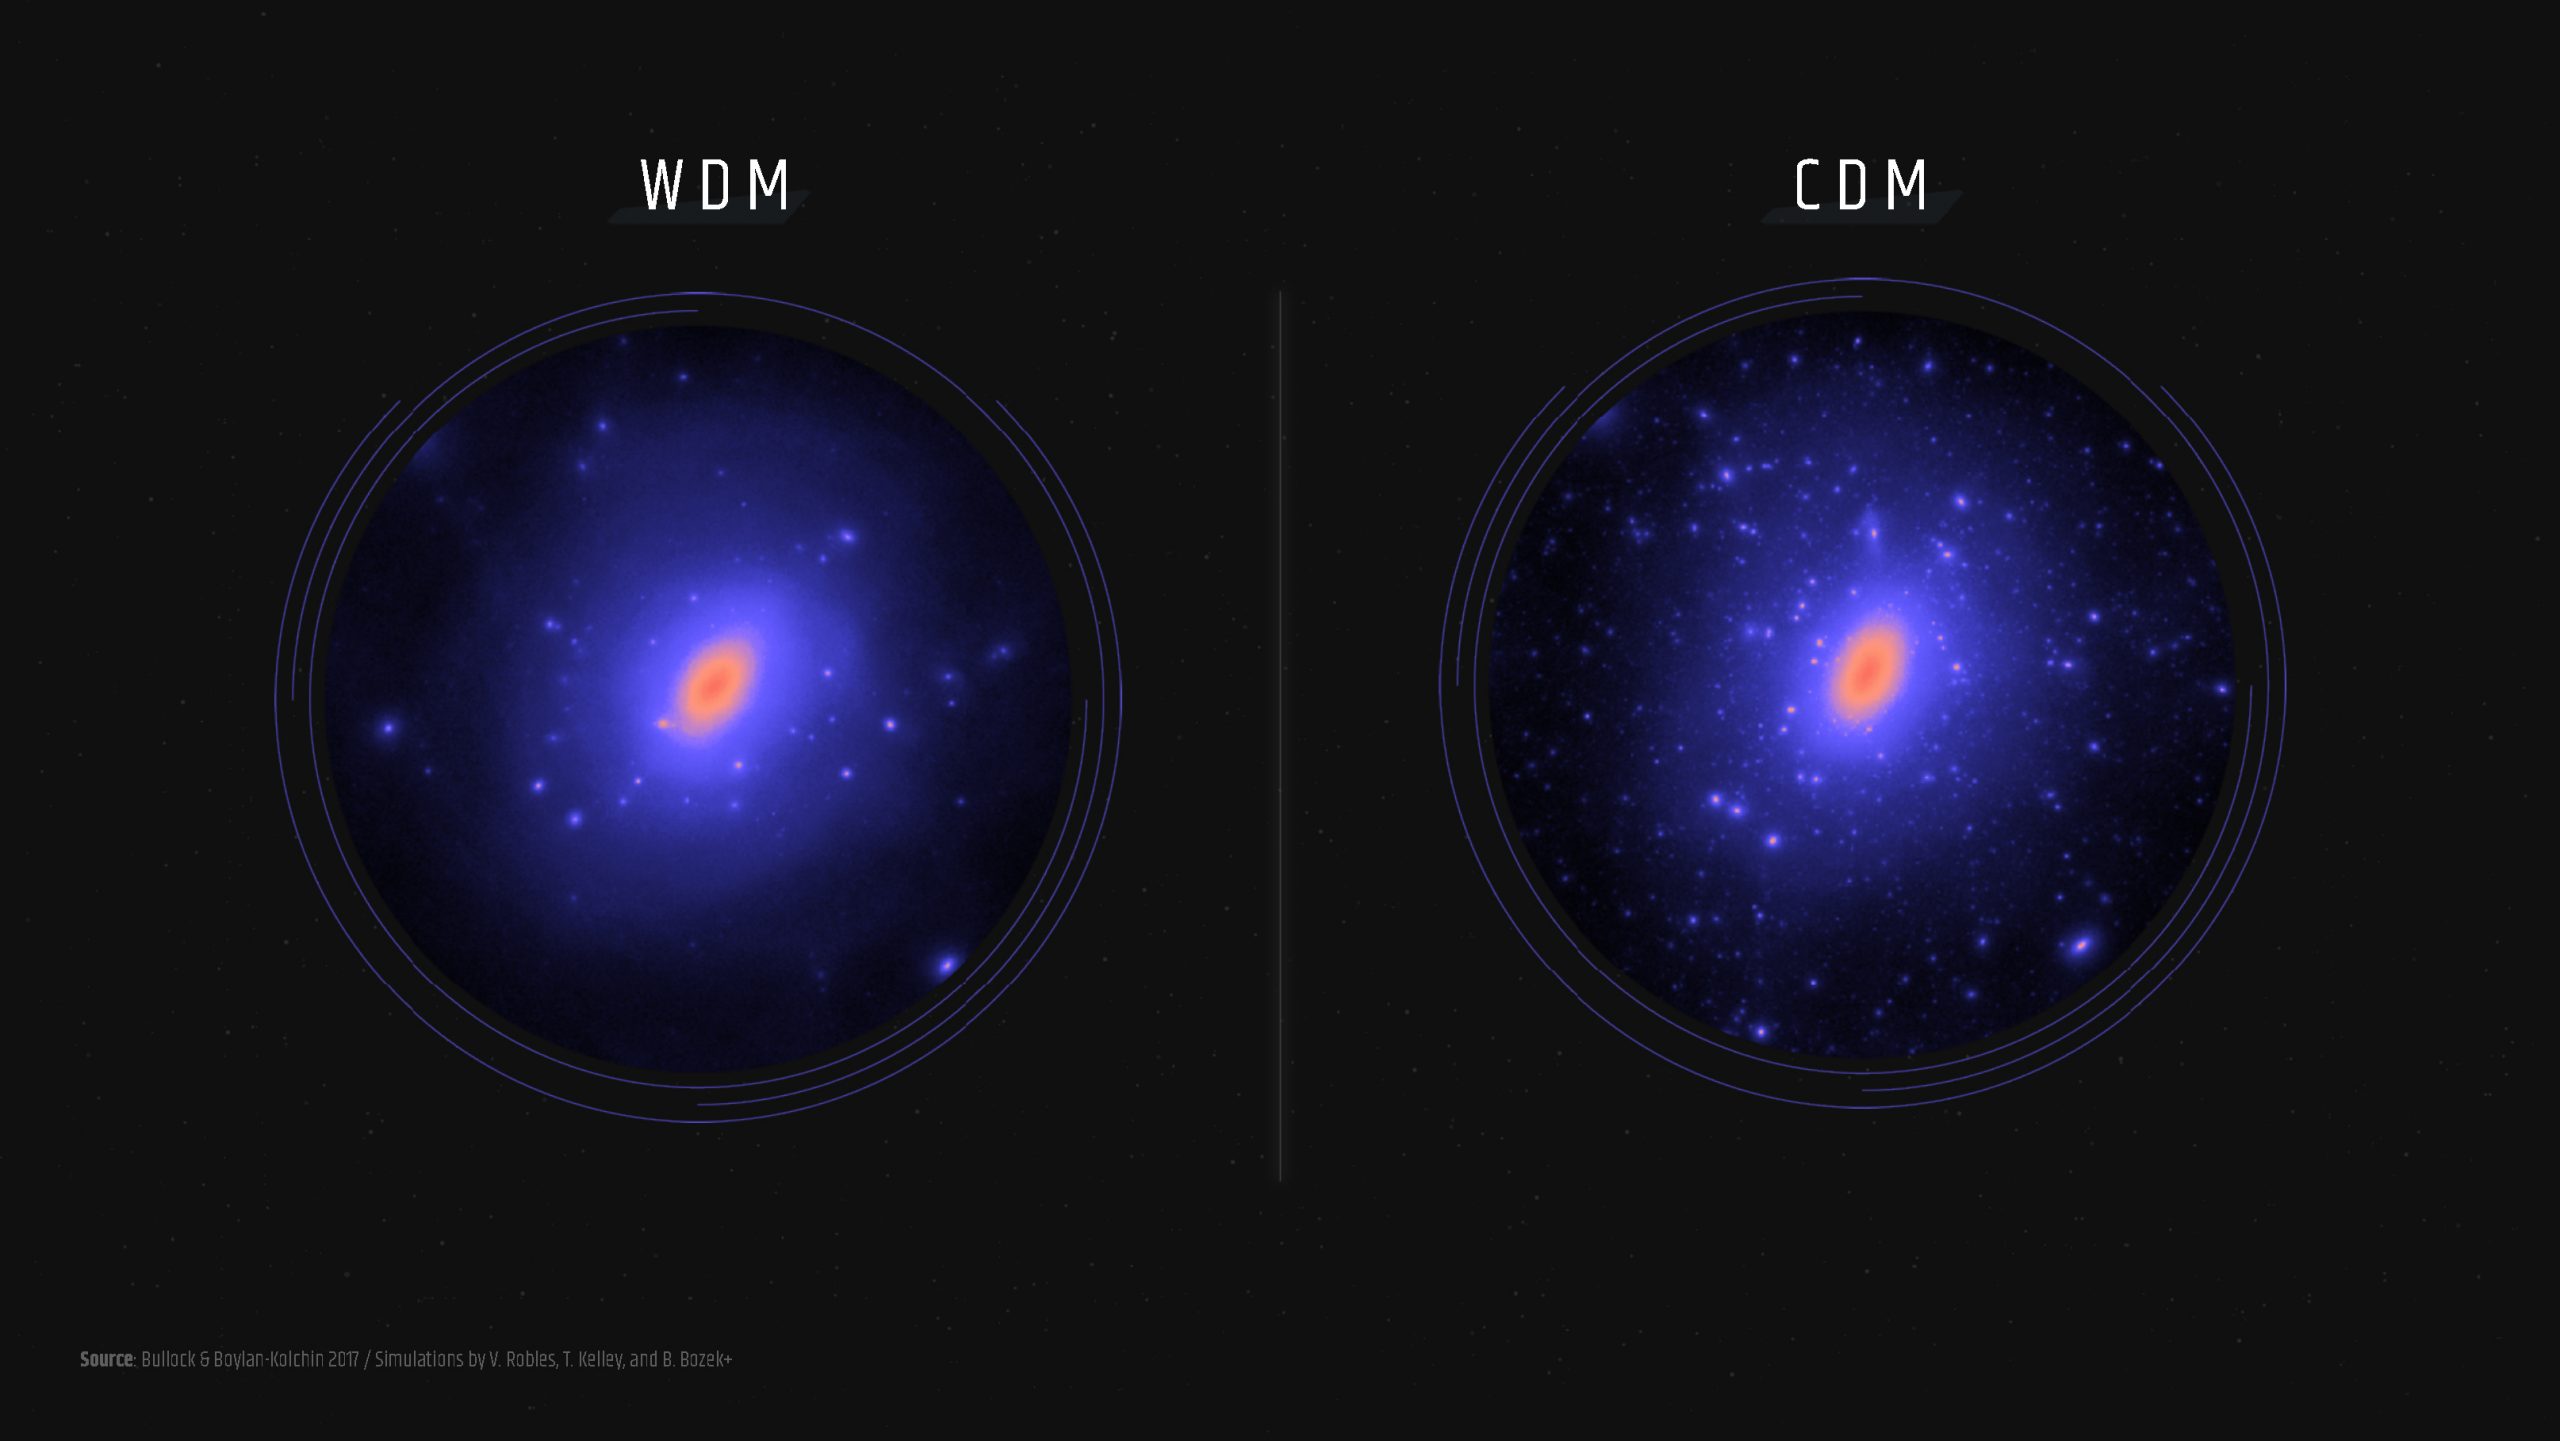 dark matter is found where